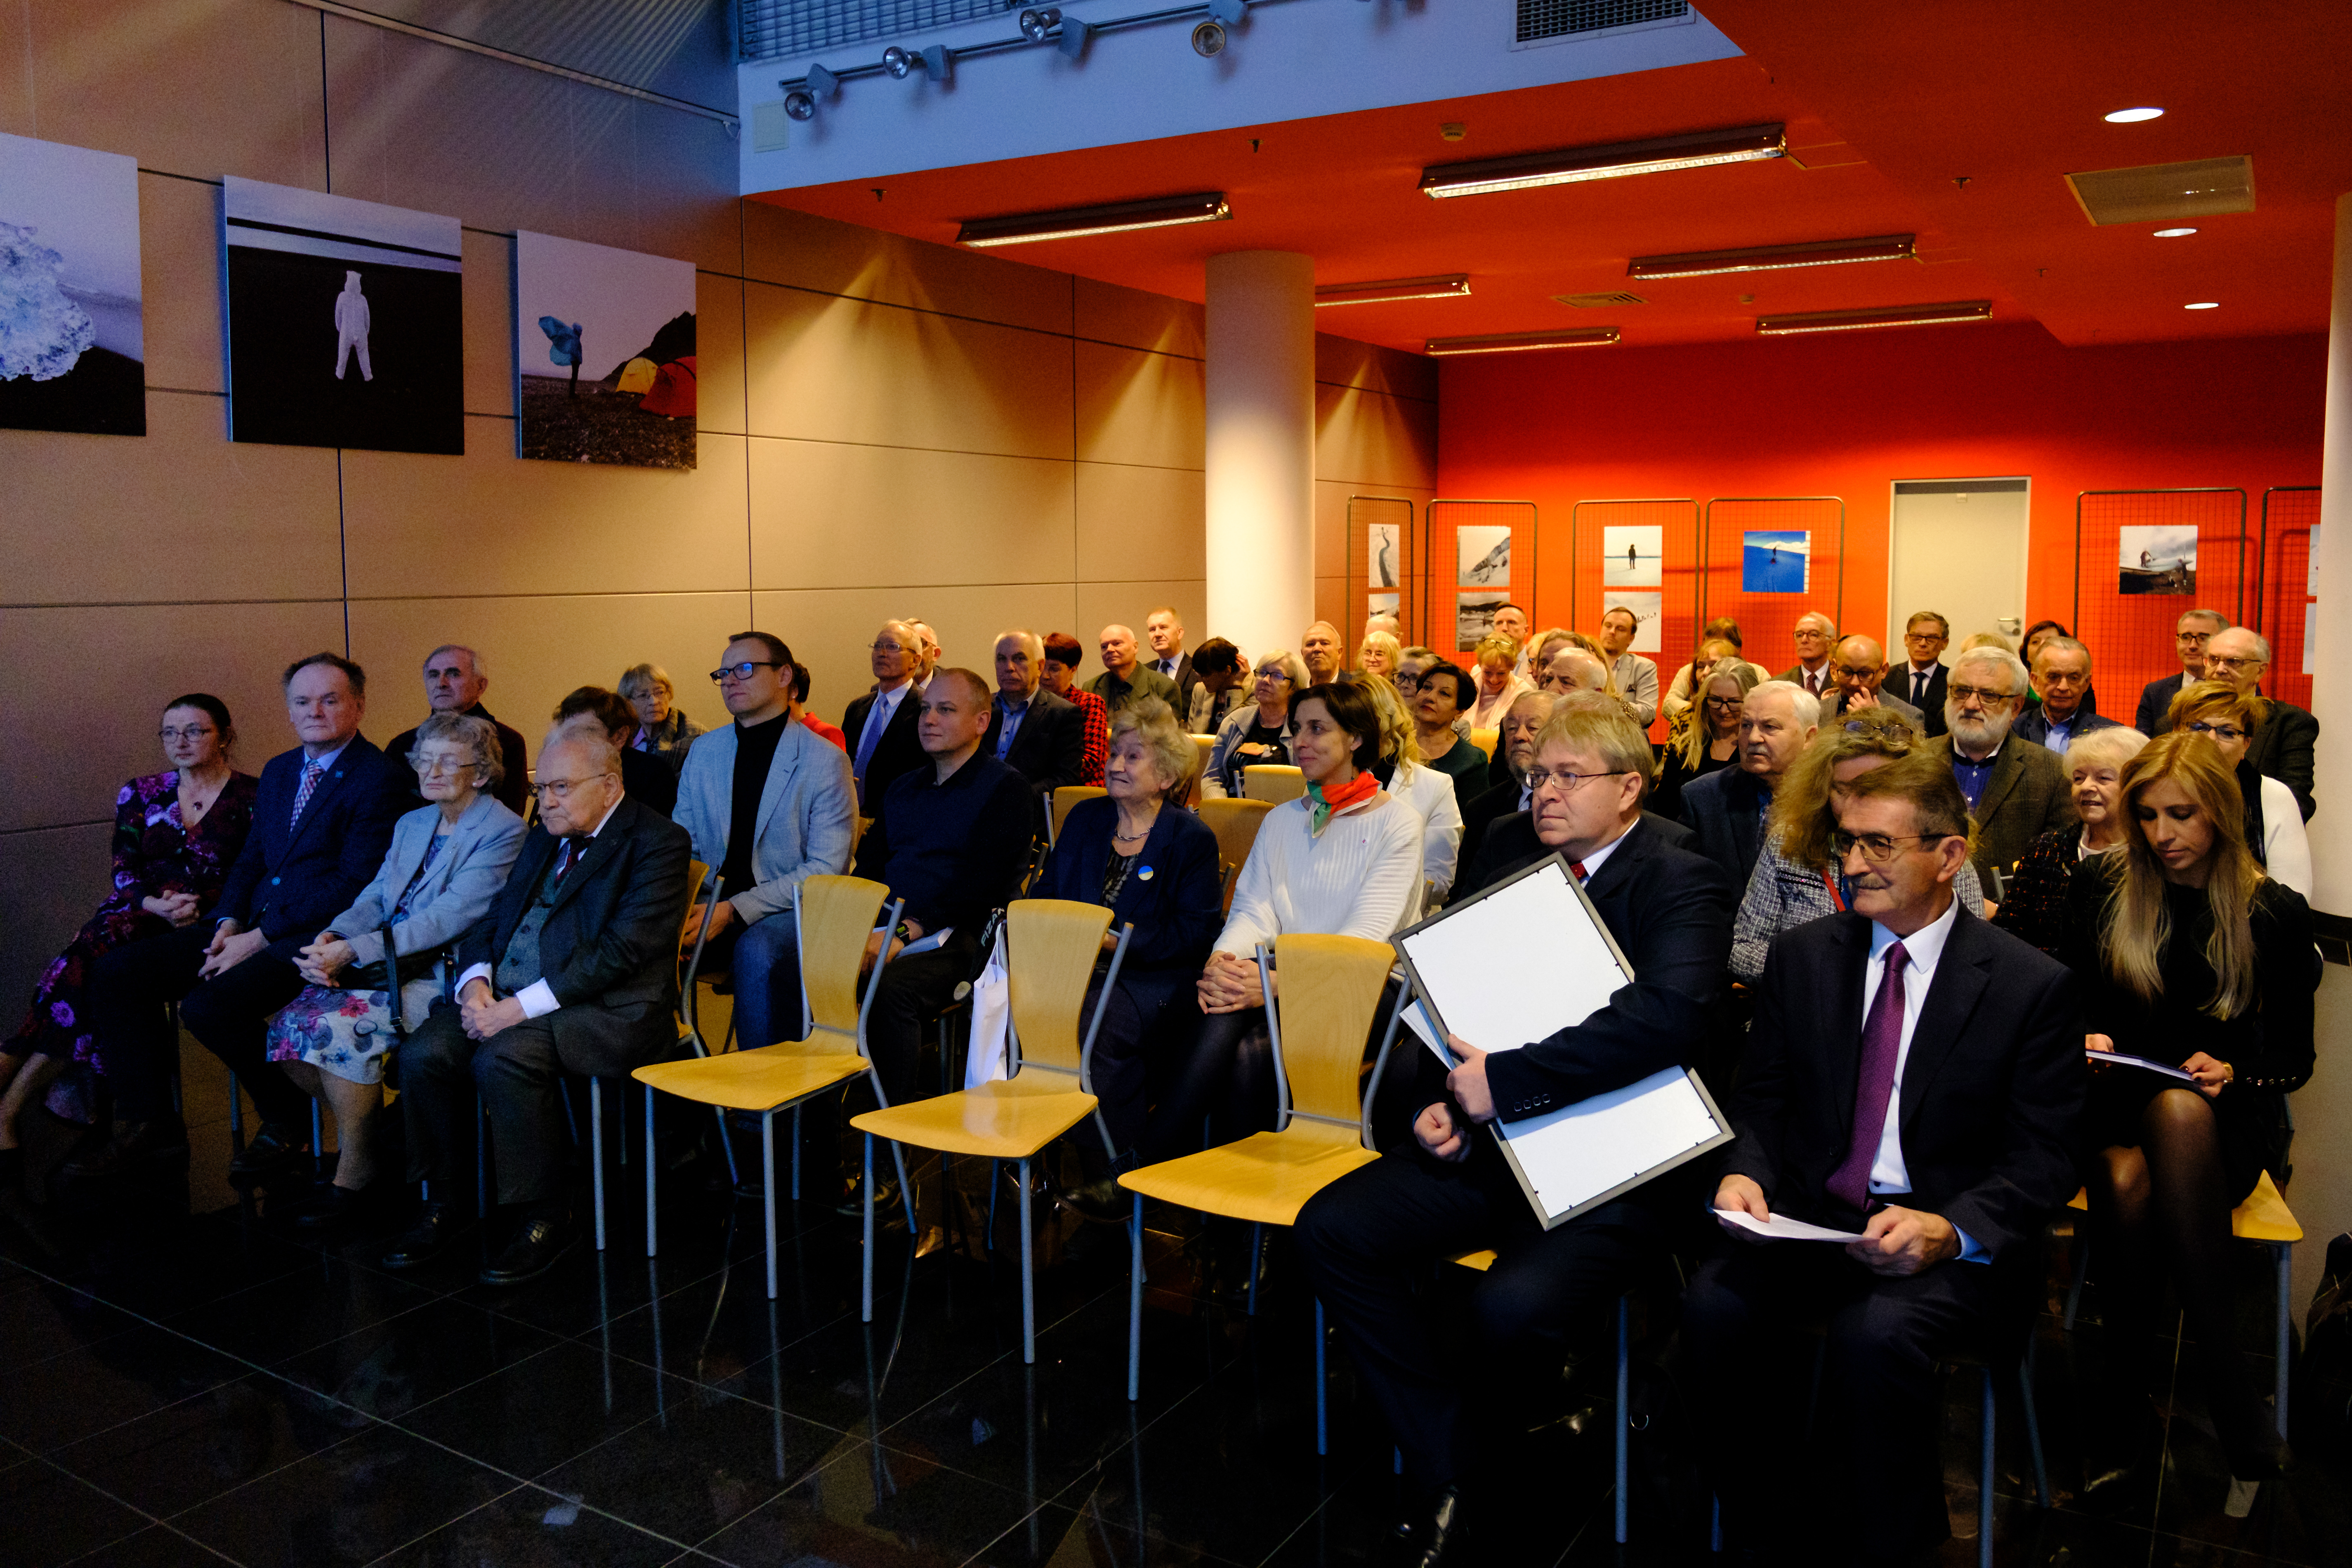 Uroczyste zakończenie obchodów jubileuszu 100-lecia TPNiS w Bibliotece Głównej UG, 18 listopada 2022 (Fot. Łukasz Bień).